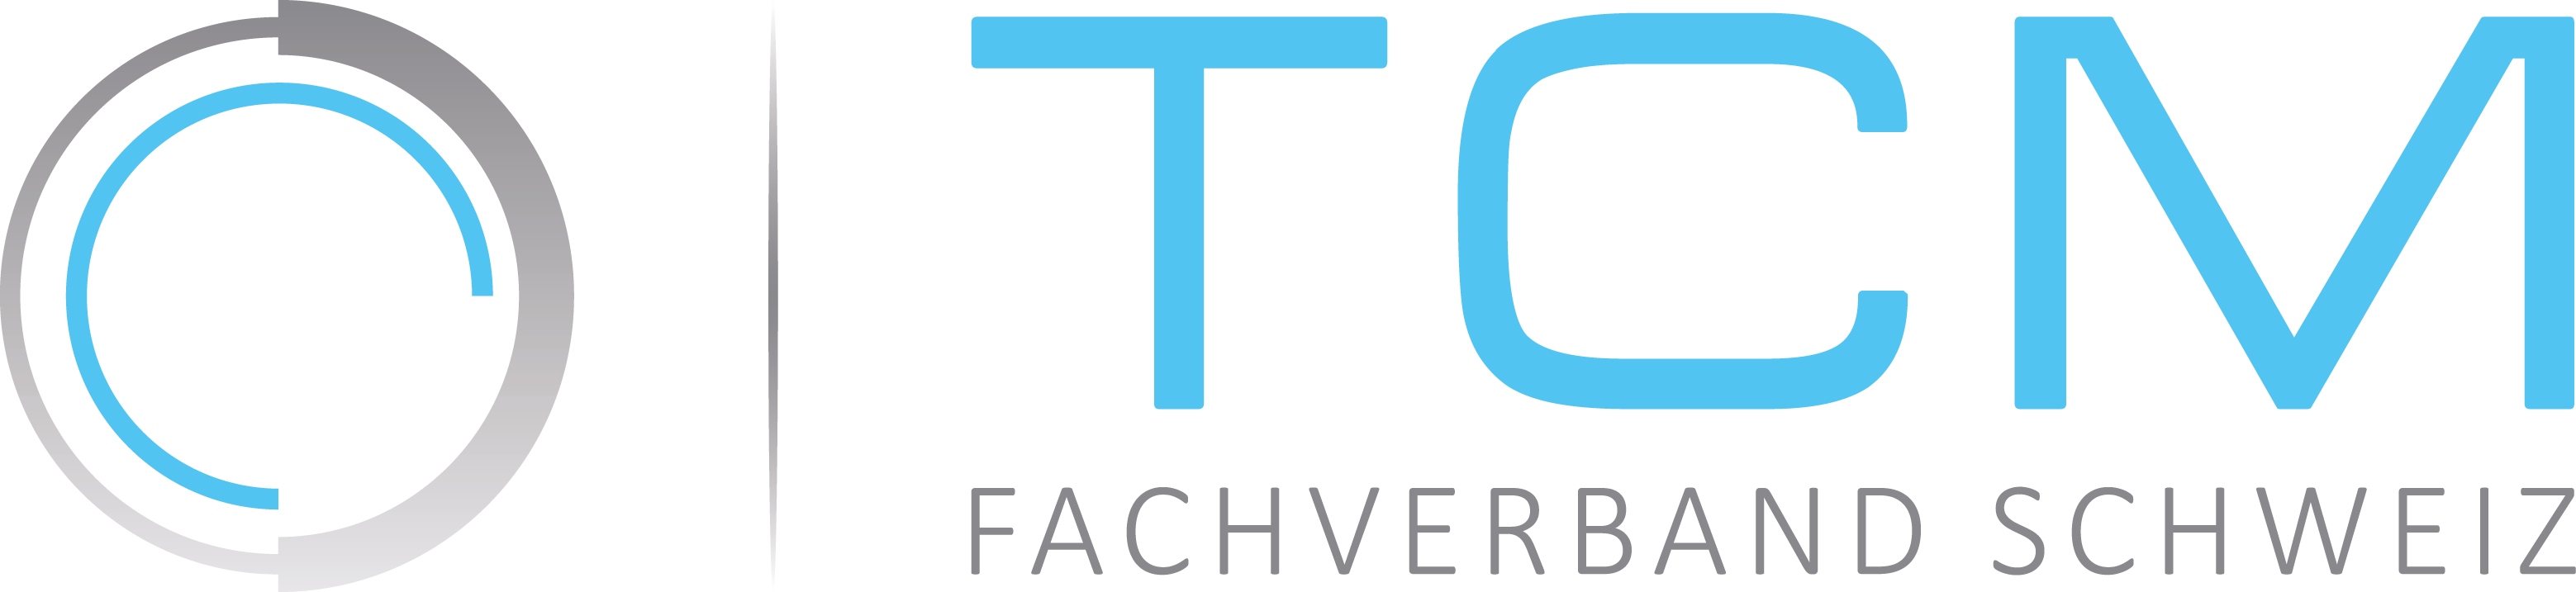 JMCarrion, Mitglied des TCM Fachverband Schweiz.